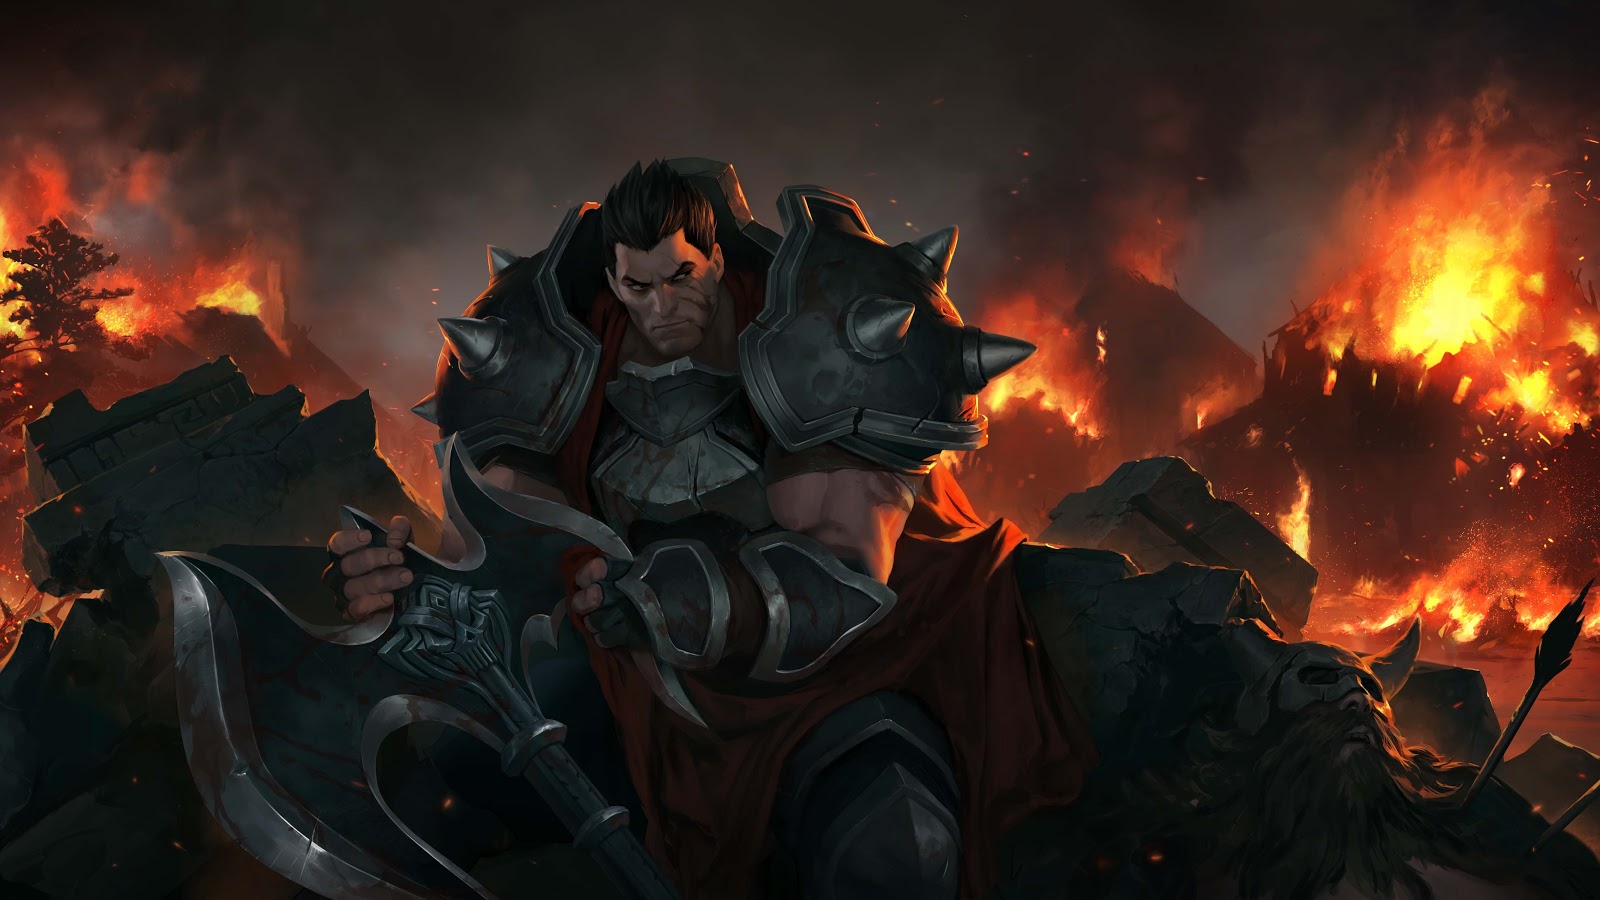 Darius est assis dans des débris, la lame de sa hache dans les mains, il se retourne pour contempler l’incendie destructeur derrière lui.